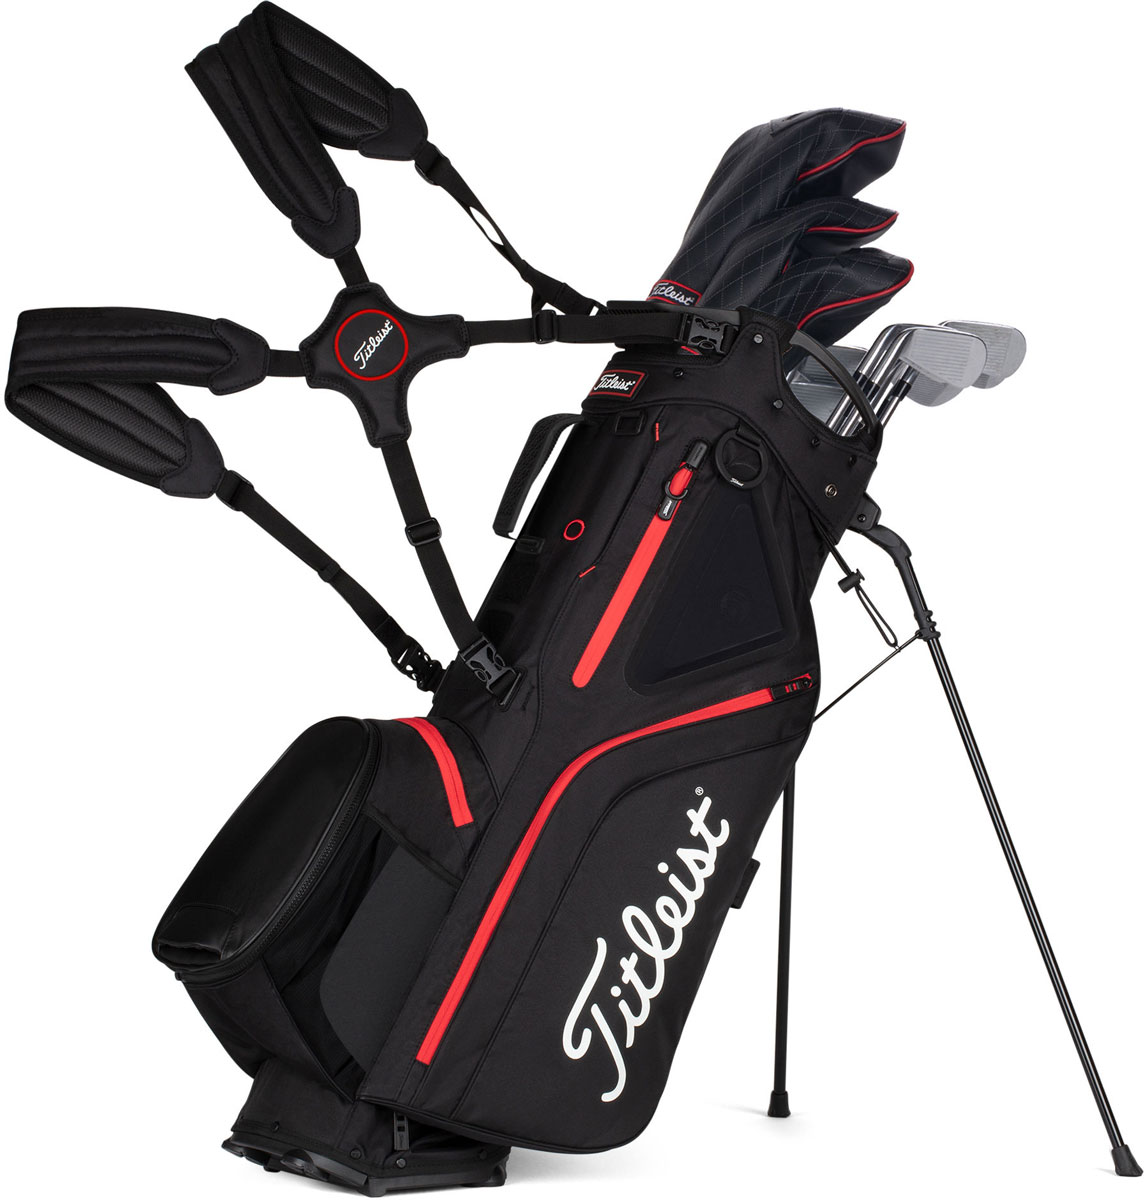 Titleist golf bag - ayanawebzine.com